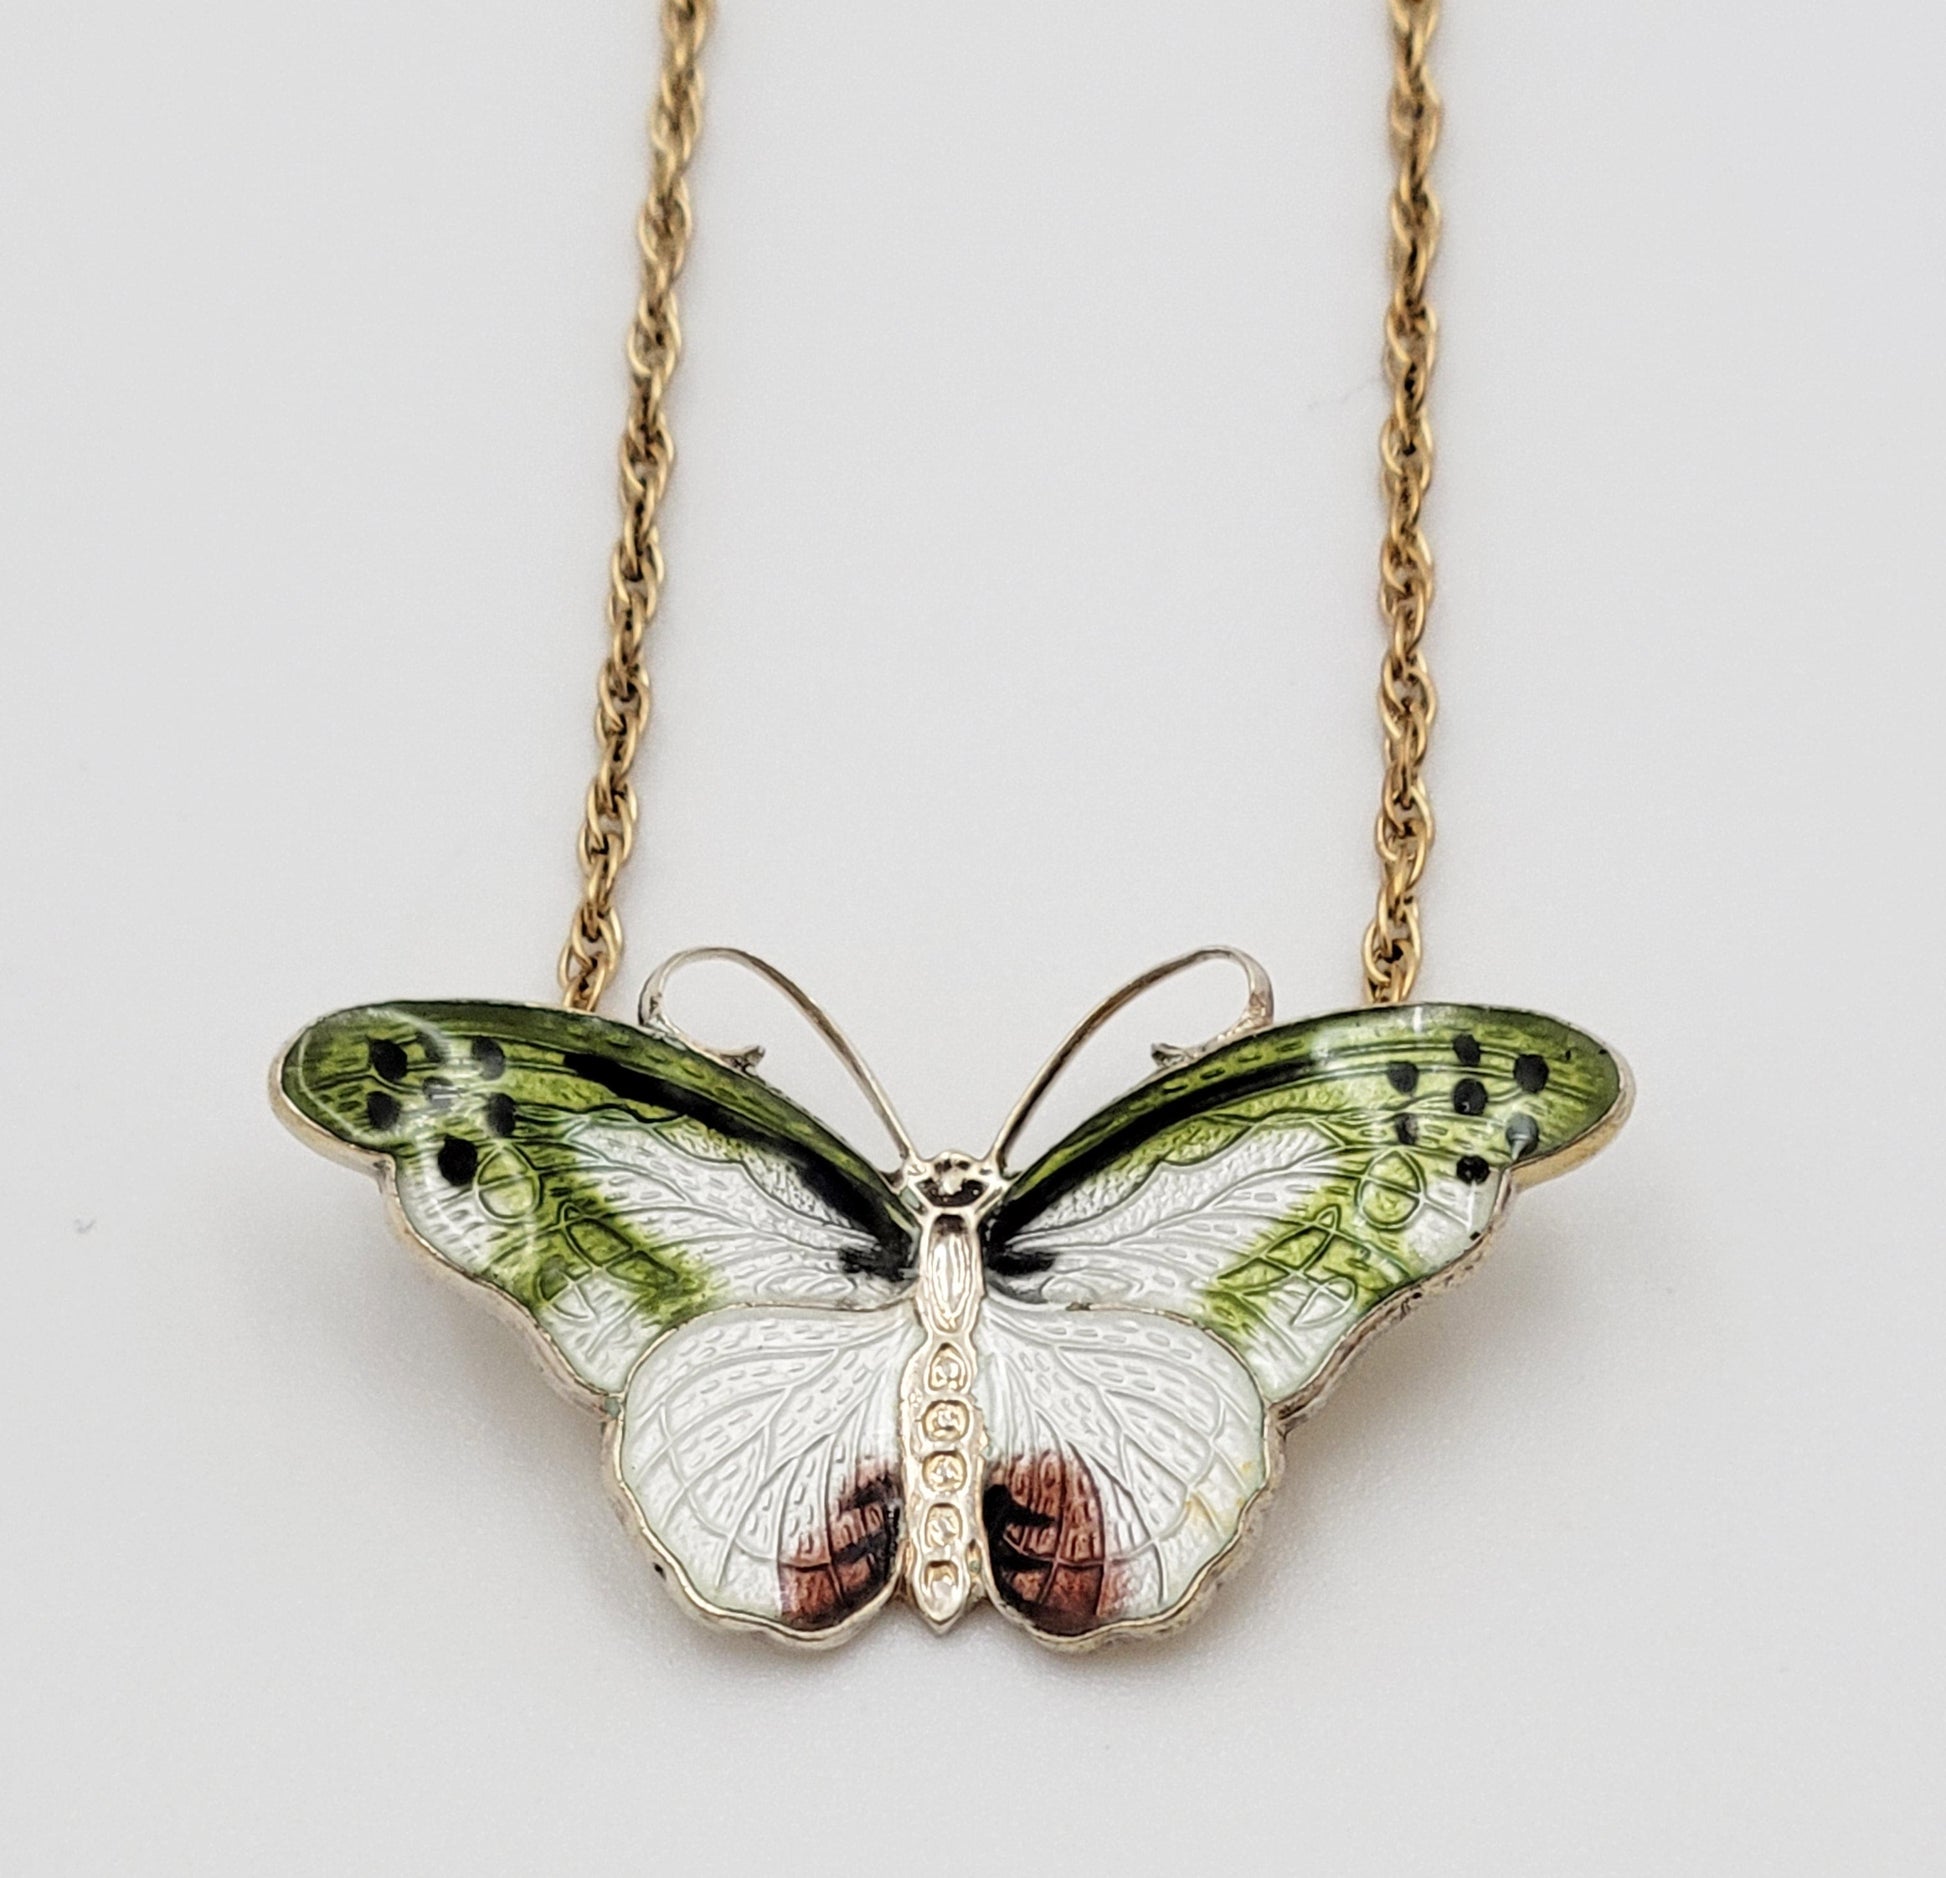 Hroar Prydz Jewelry Hroar Prydz Norway Sterling & Guilloche Enamel Butterfly Necklace 20/30s